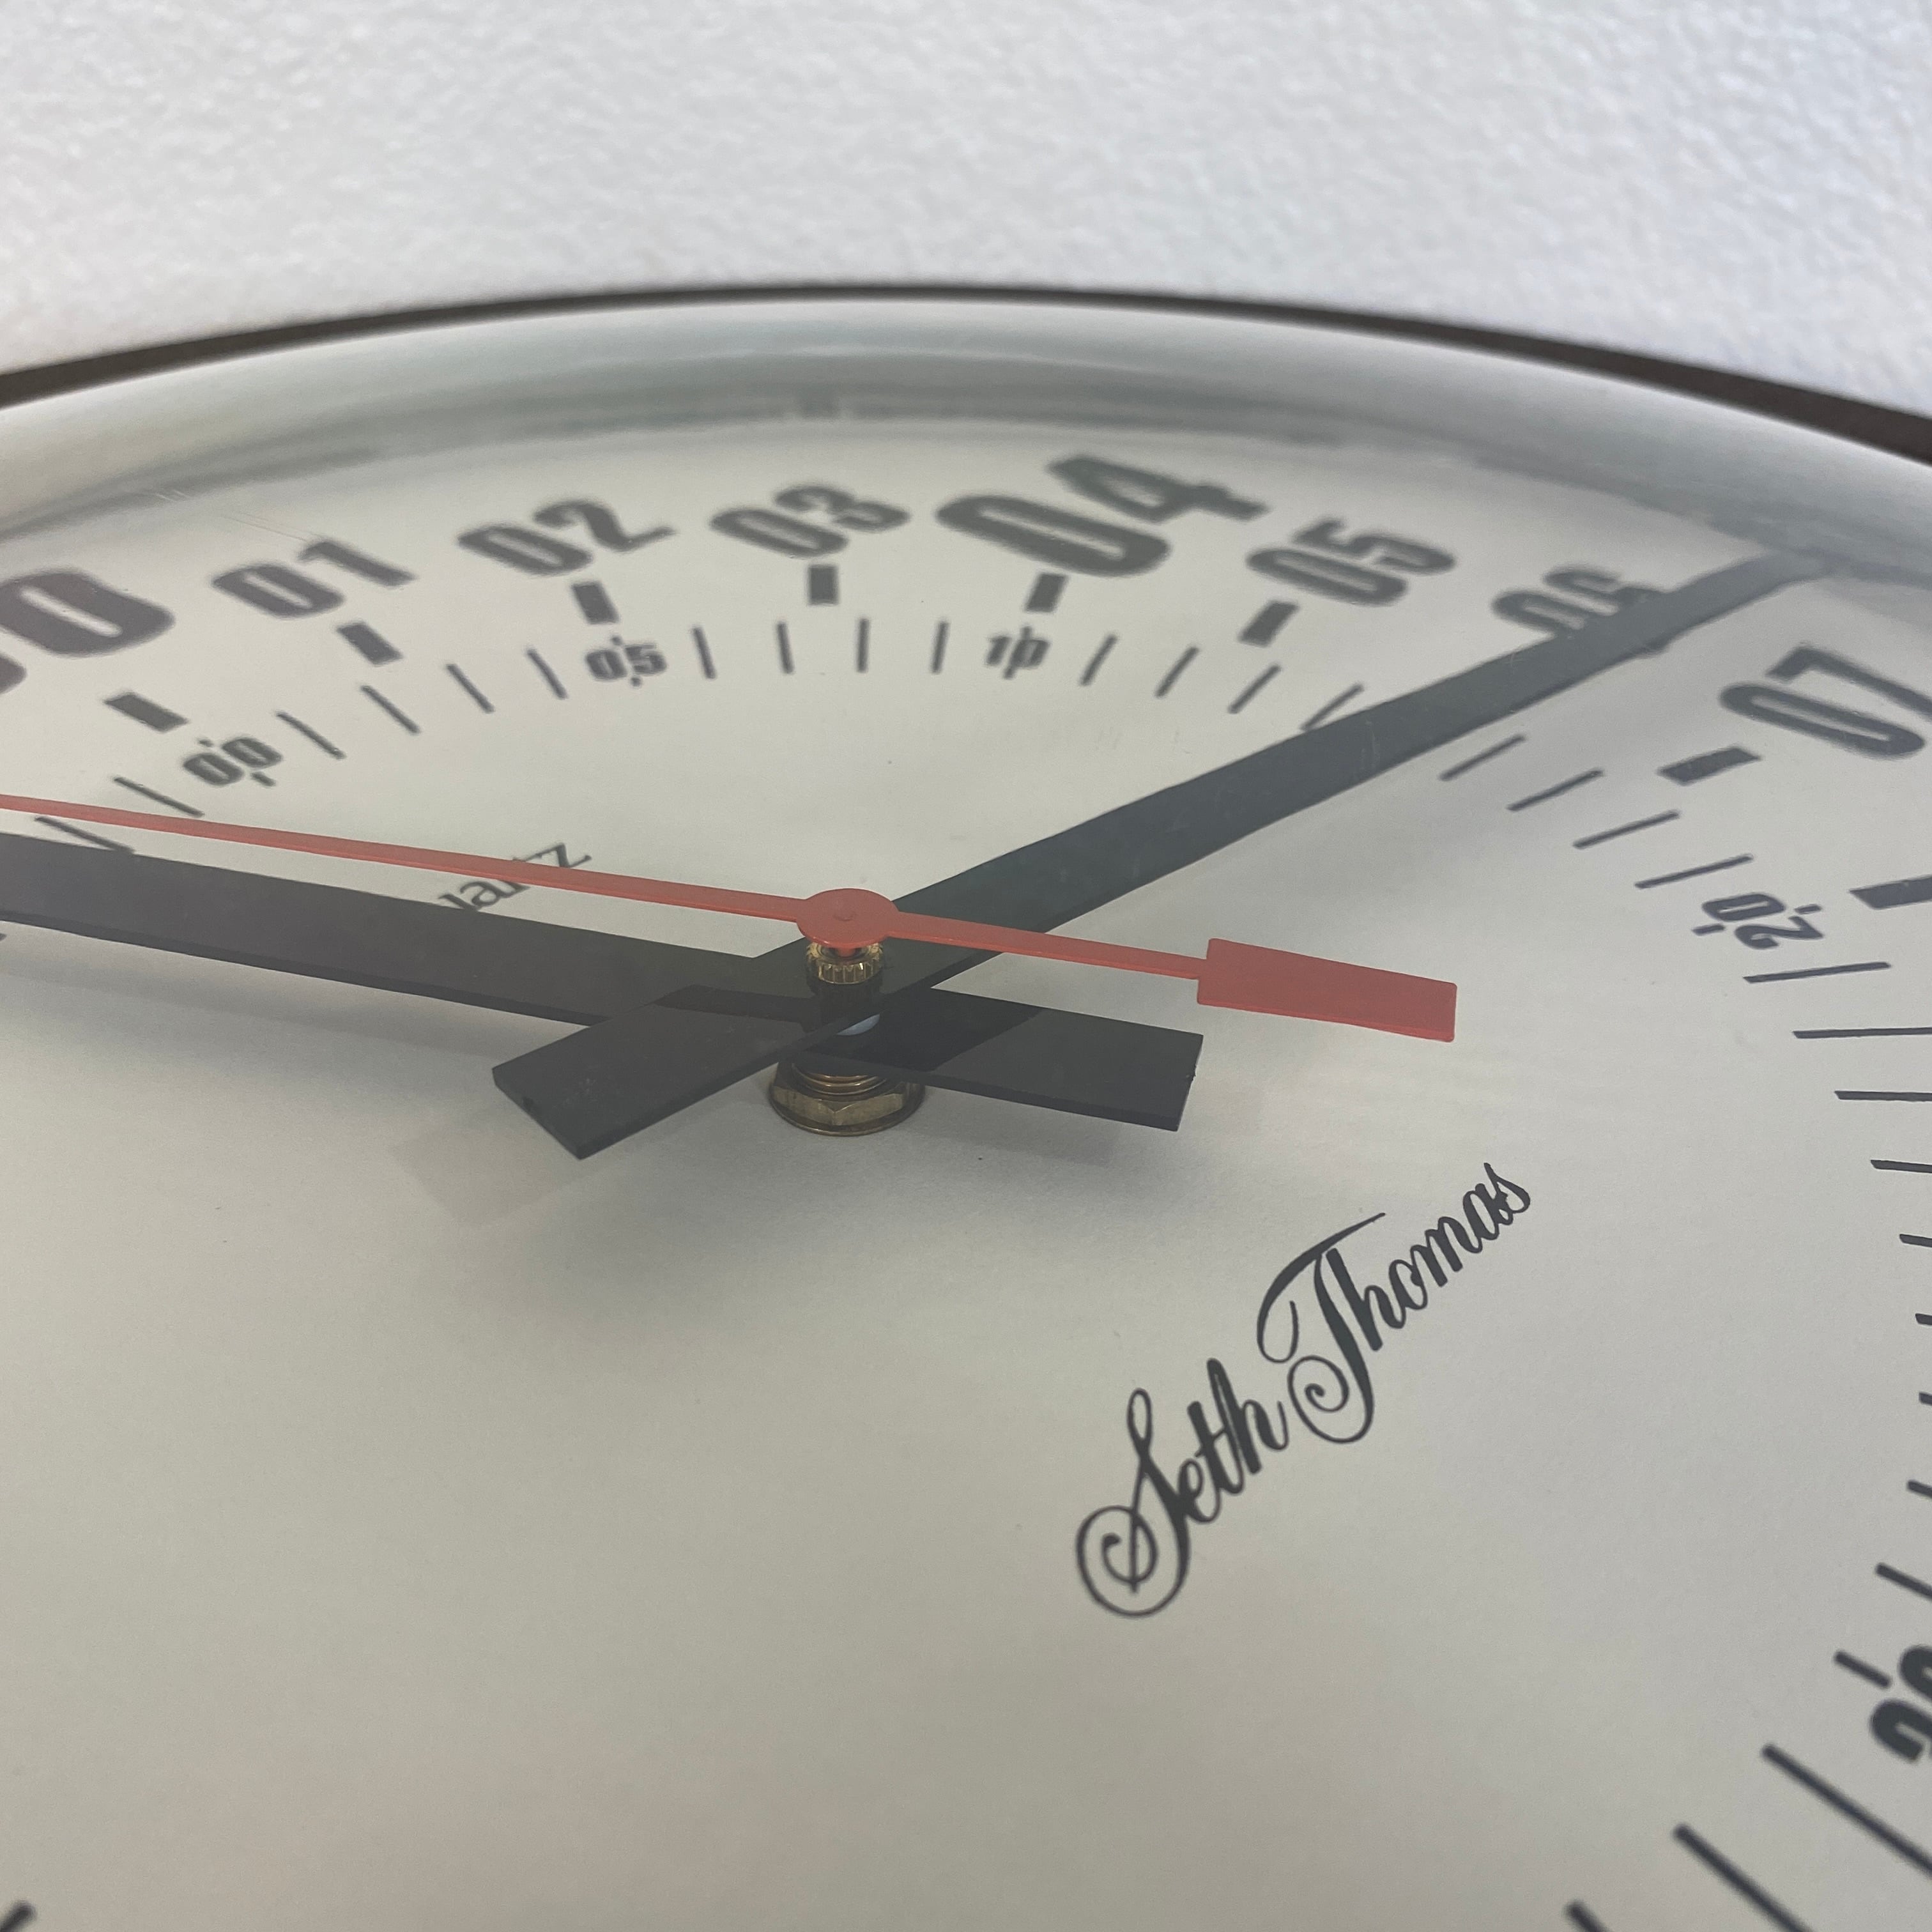 100年以上前のアメリカのセストーマス社の古時計 - 掛時計/柱時計